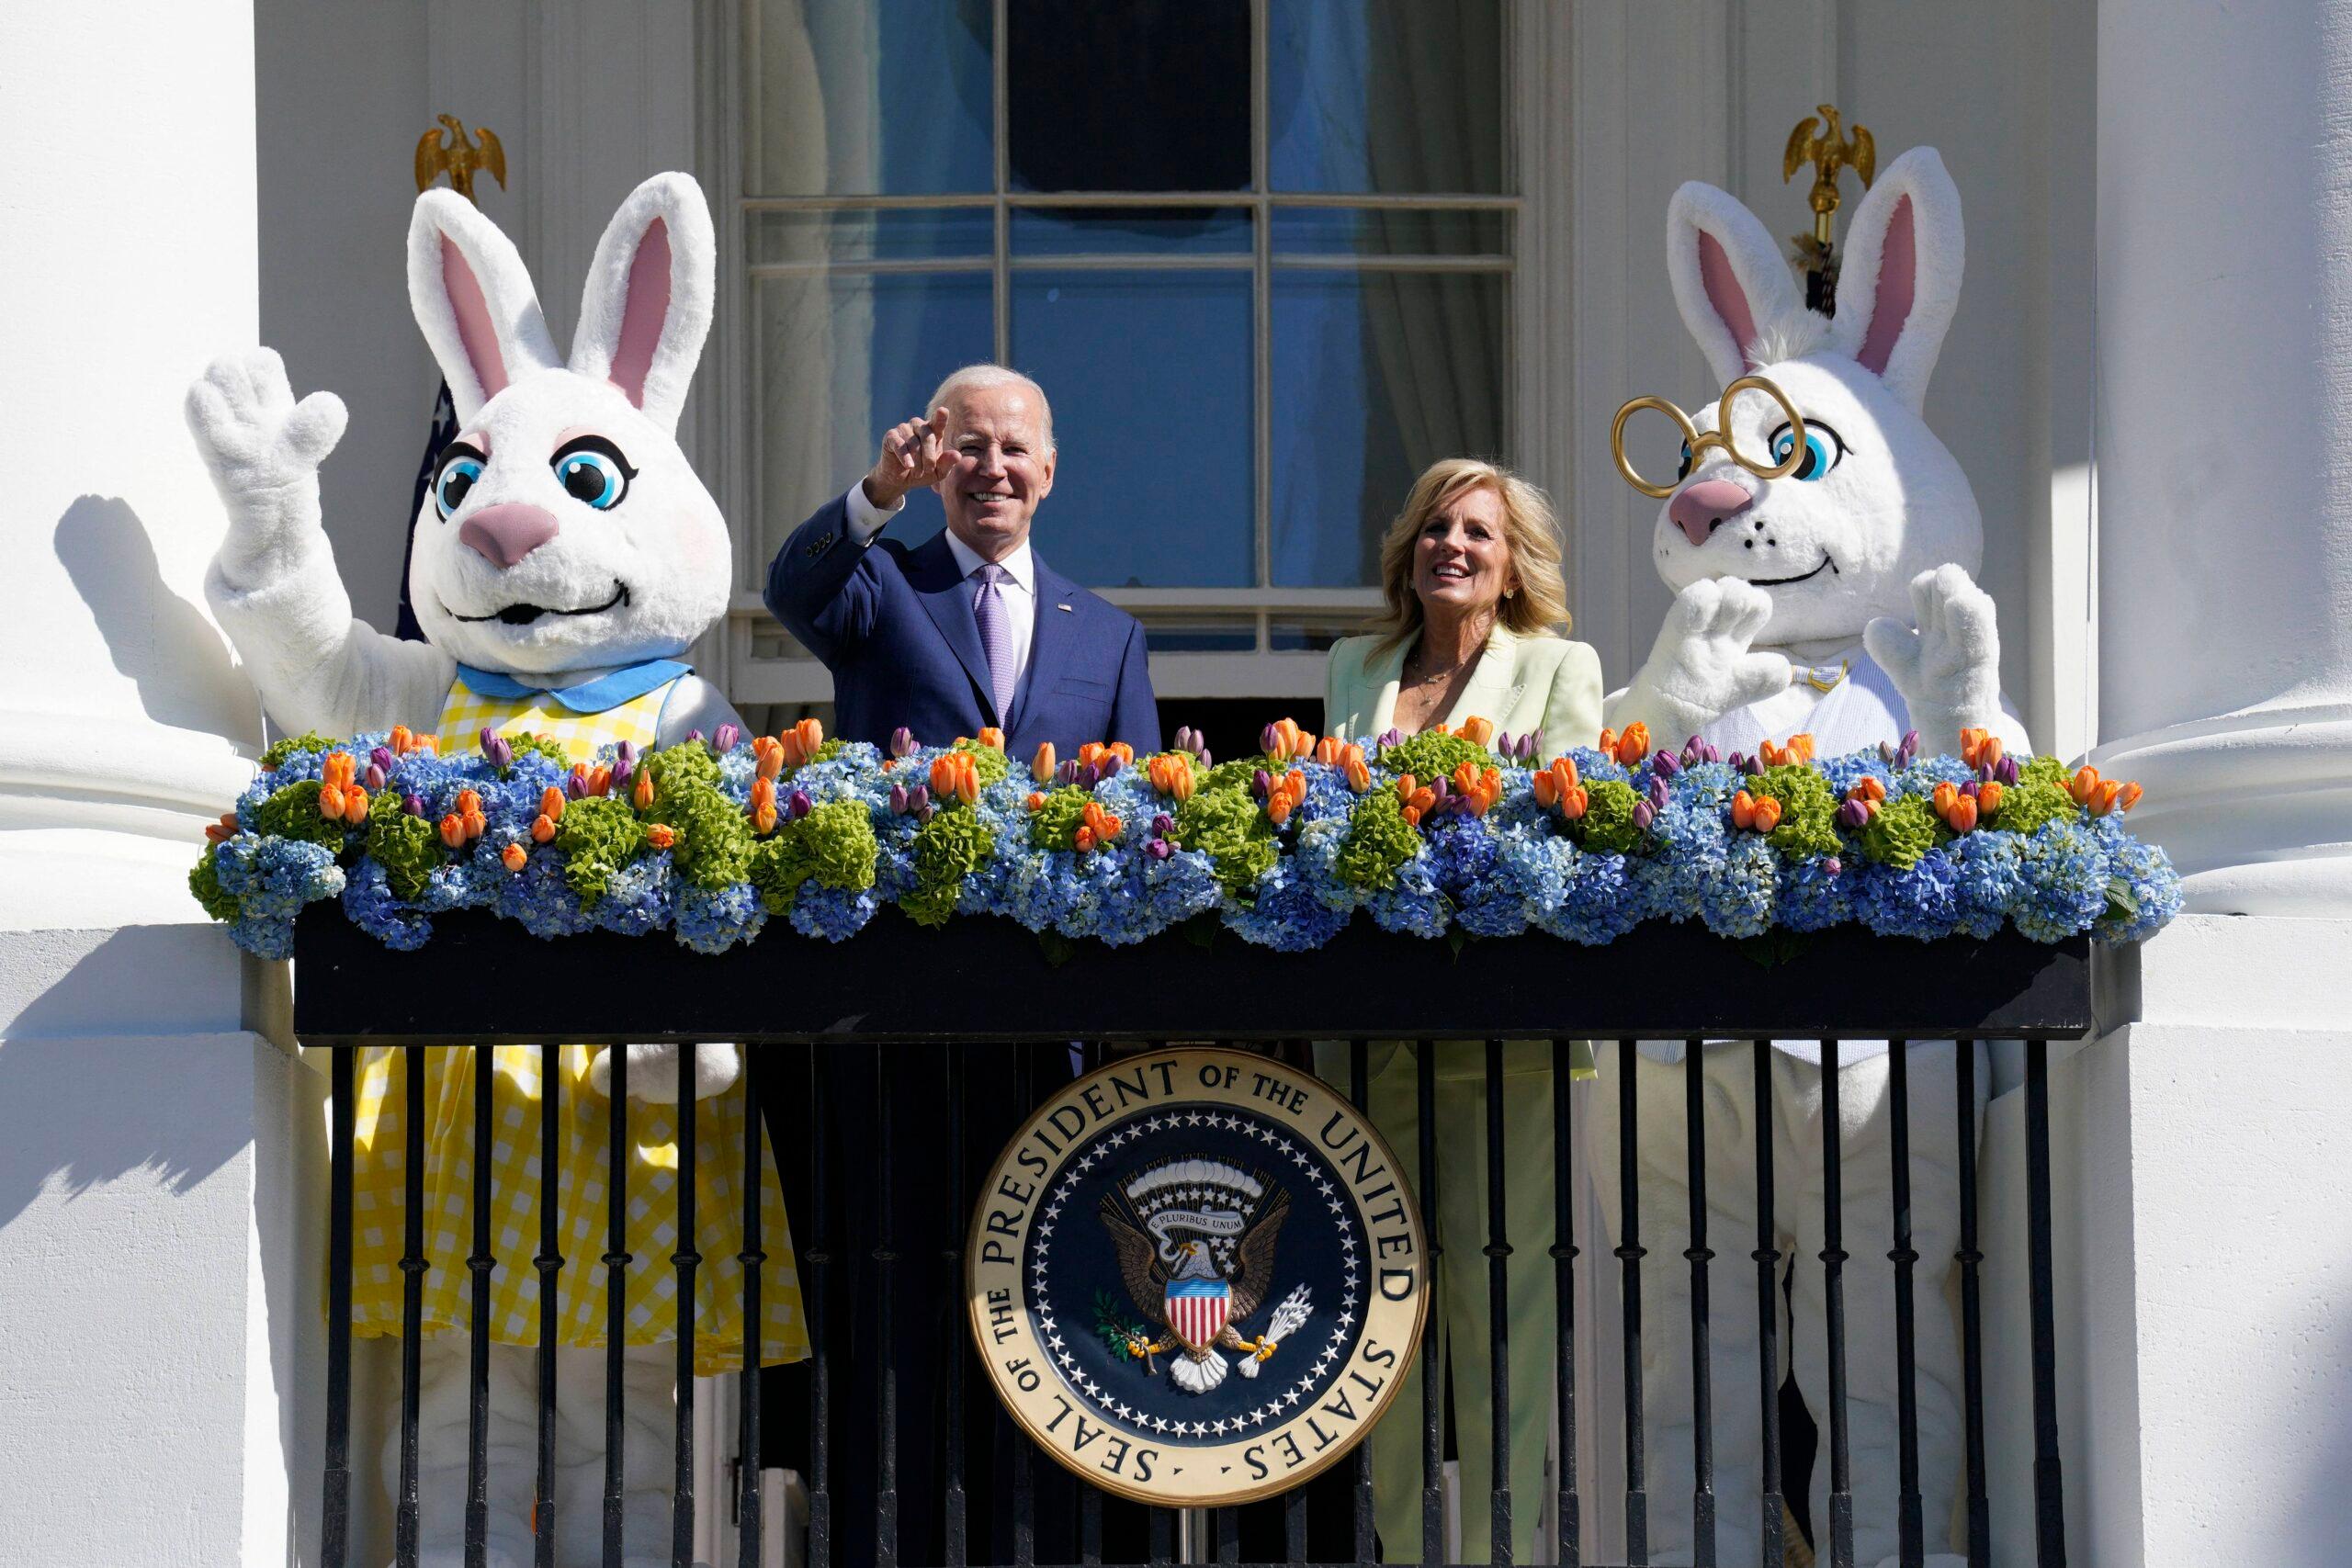 PETA criticada por convocar Joe Biden para uma nova tradição de Páscoa